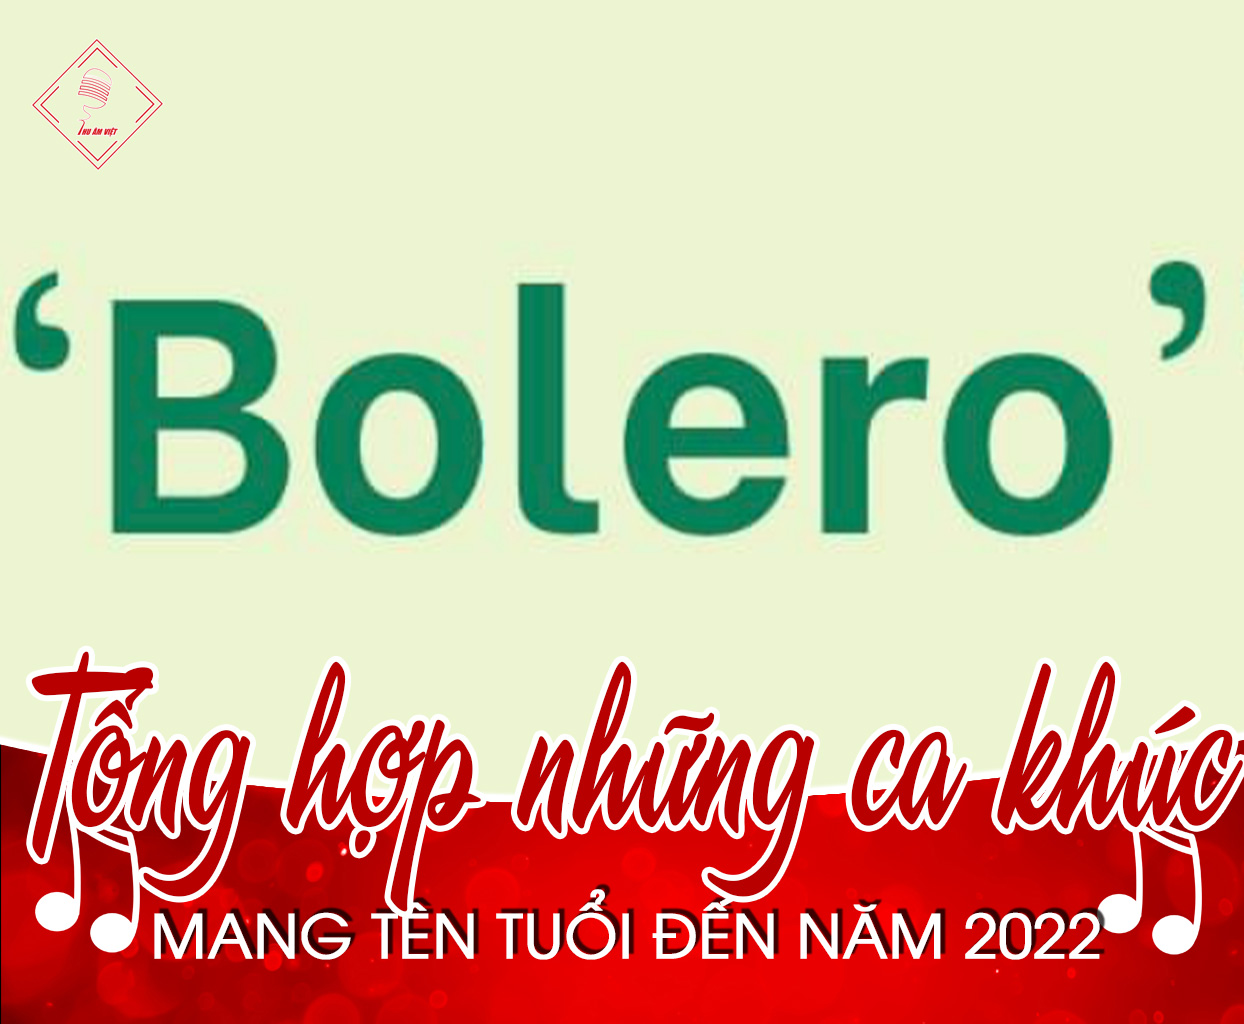 Tổng hợp những ca khúc bolero hay mang tên tuổi đến năm 2022